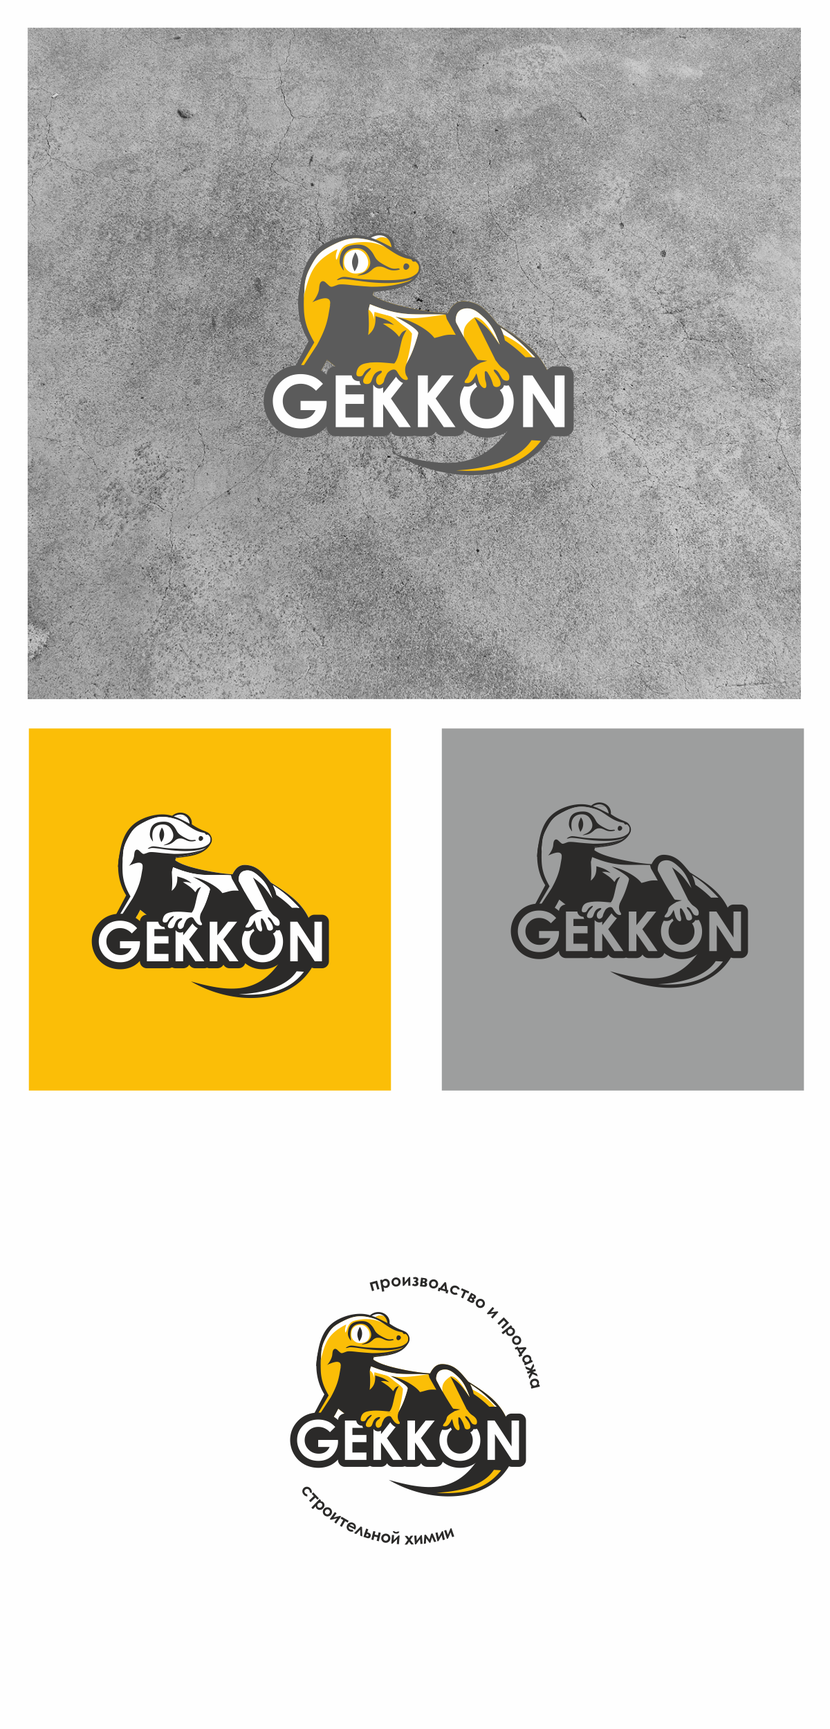 сделал более похожим на геккона - Логотип для производства полиуретановых материалов марки "Gekkon"